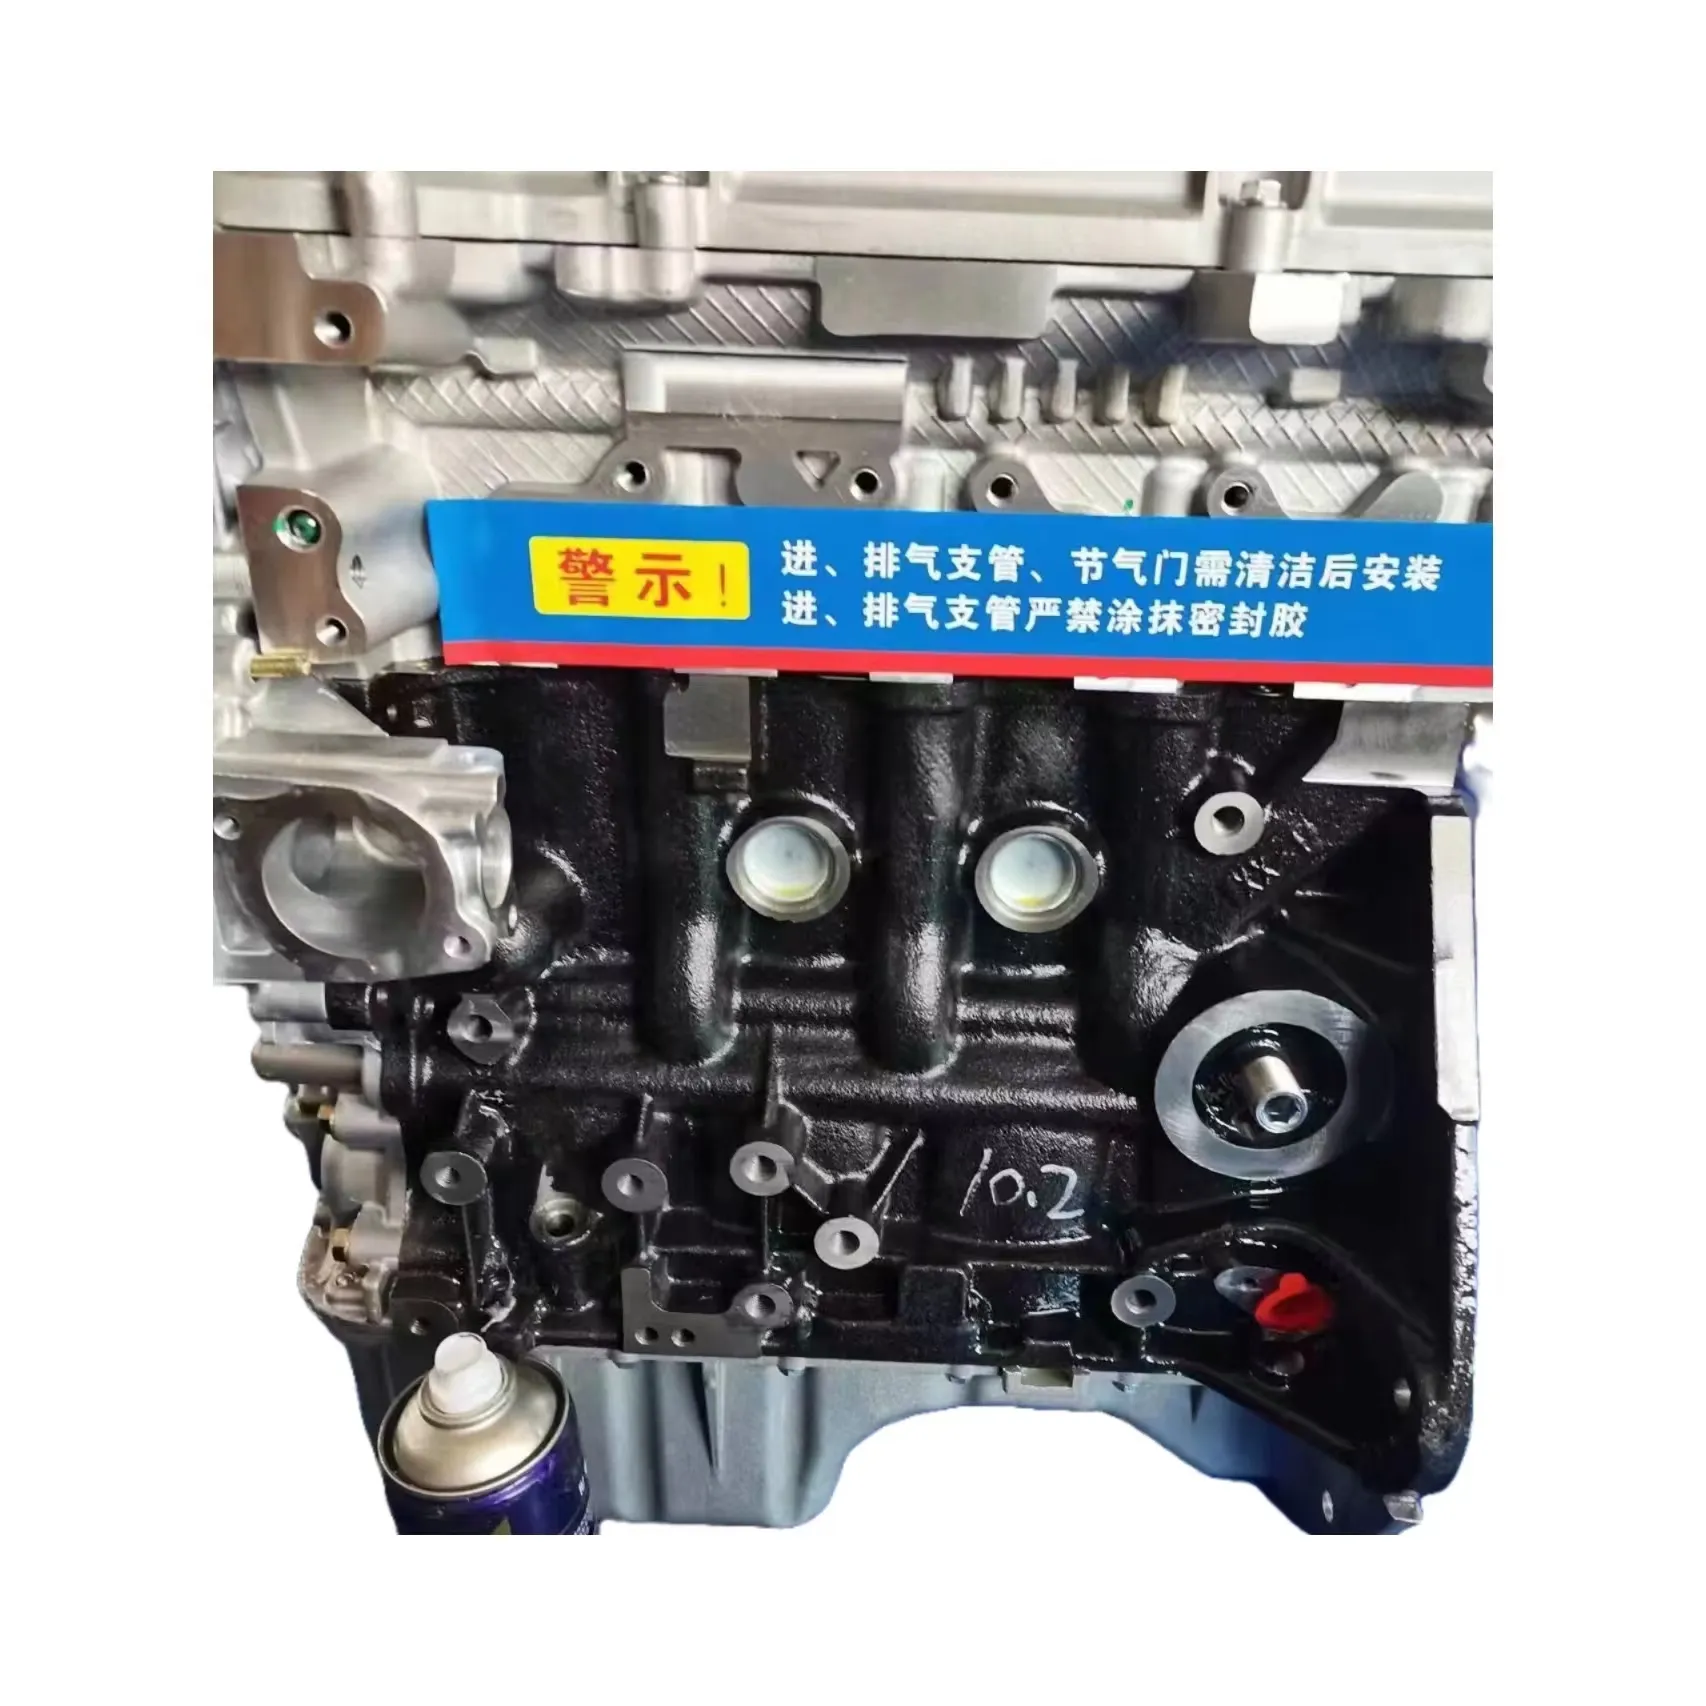 Chevrolet N400 için sıcak satış B15D2 1.5L 82KW 4 silindir çıplak motor